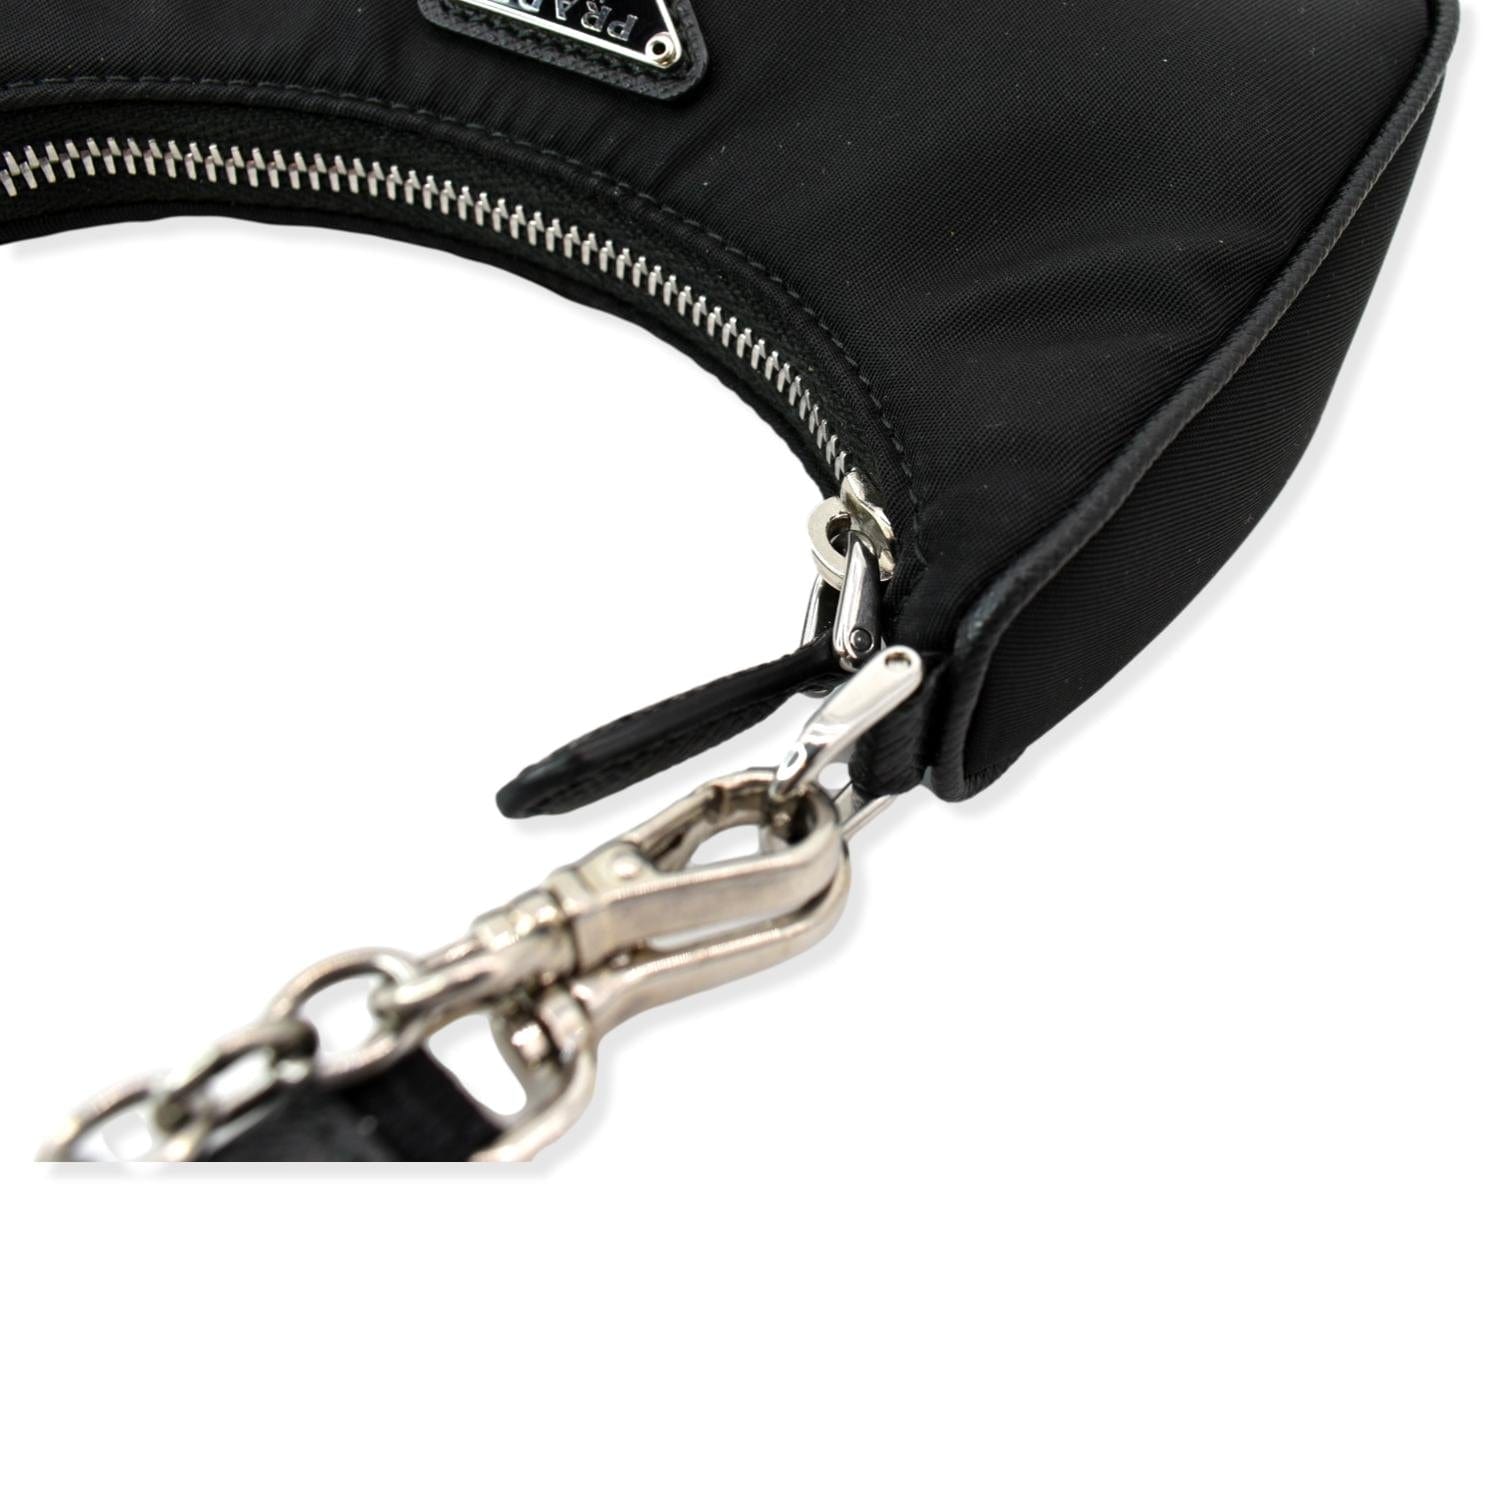 Prada Re-edition Nylon Mini Shoulder Bag in Black